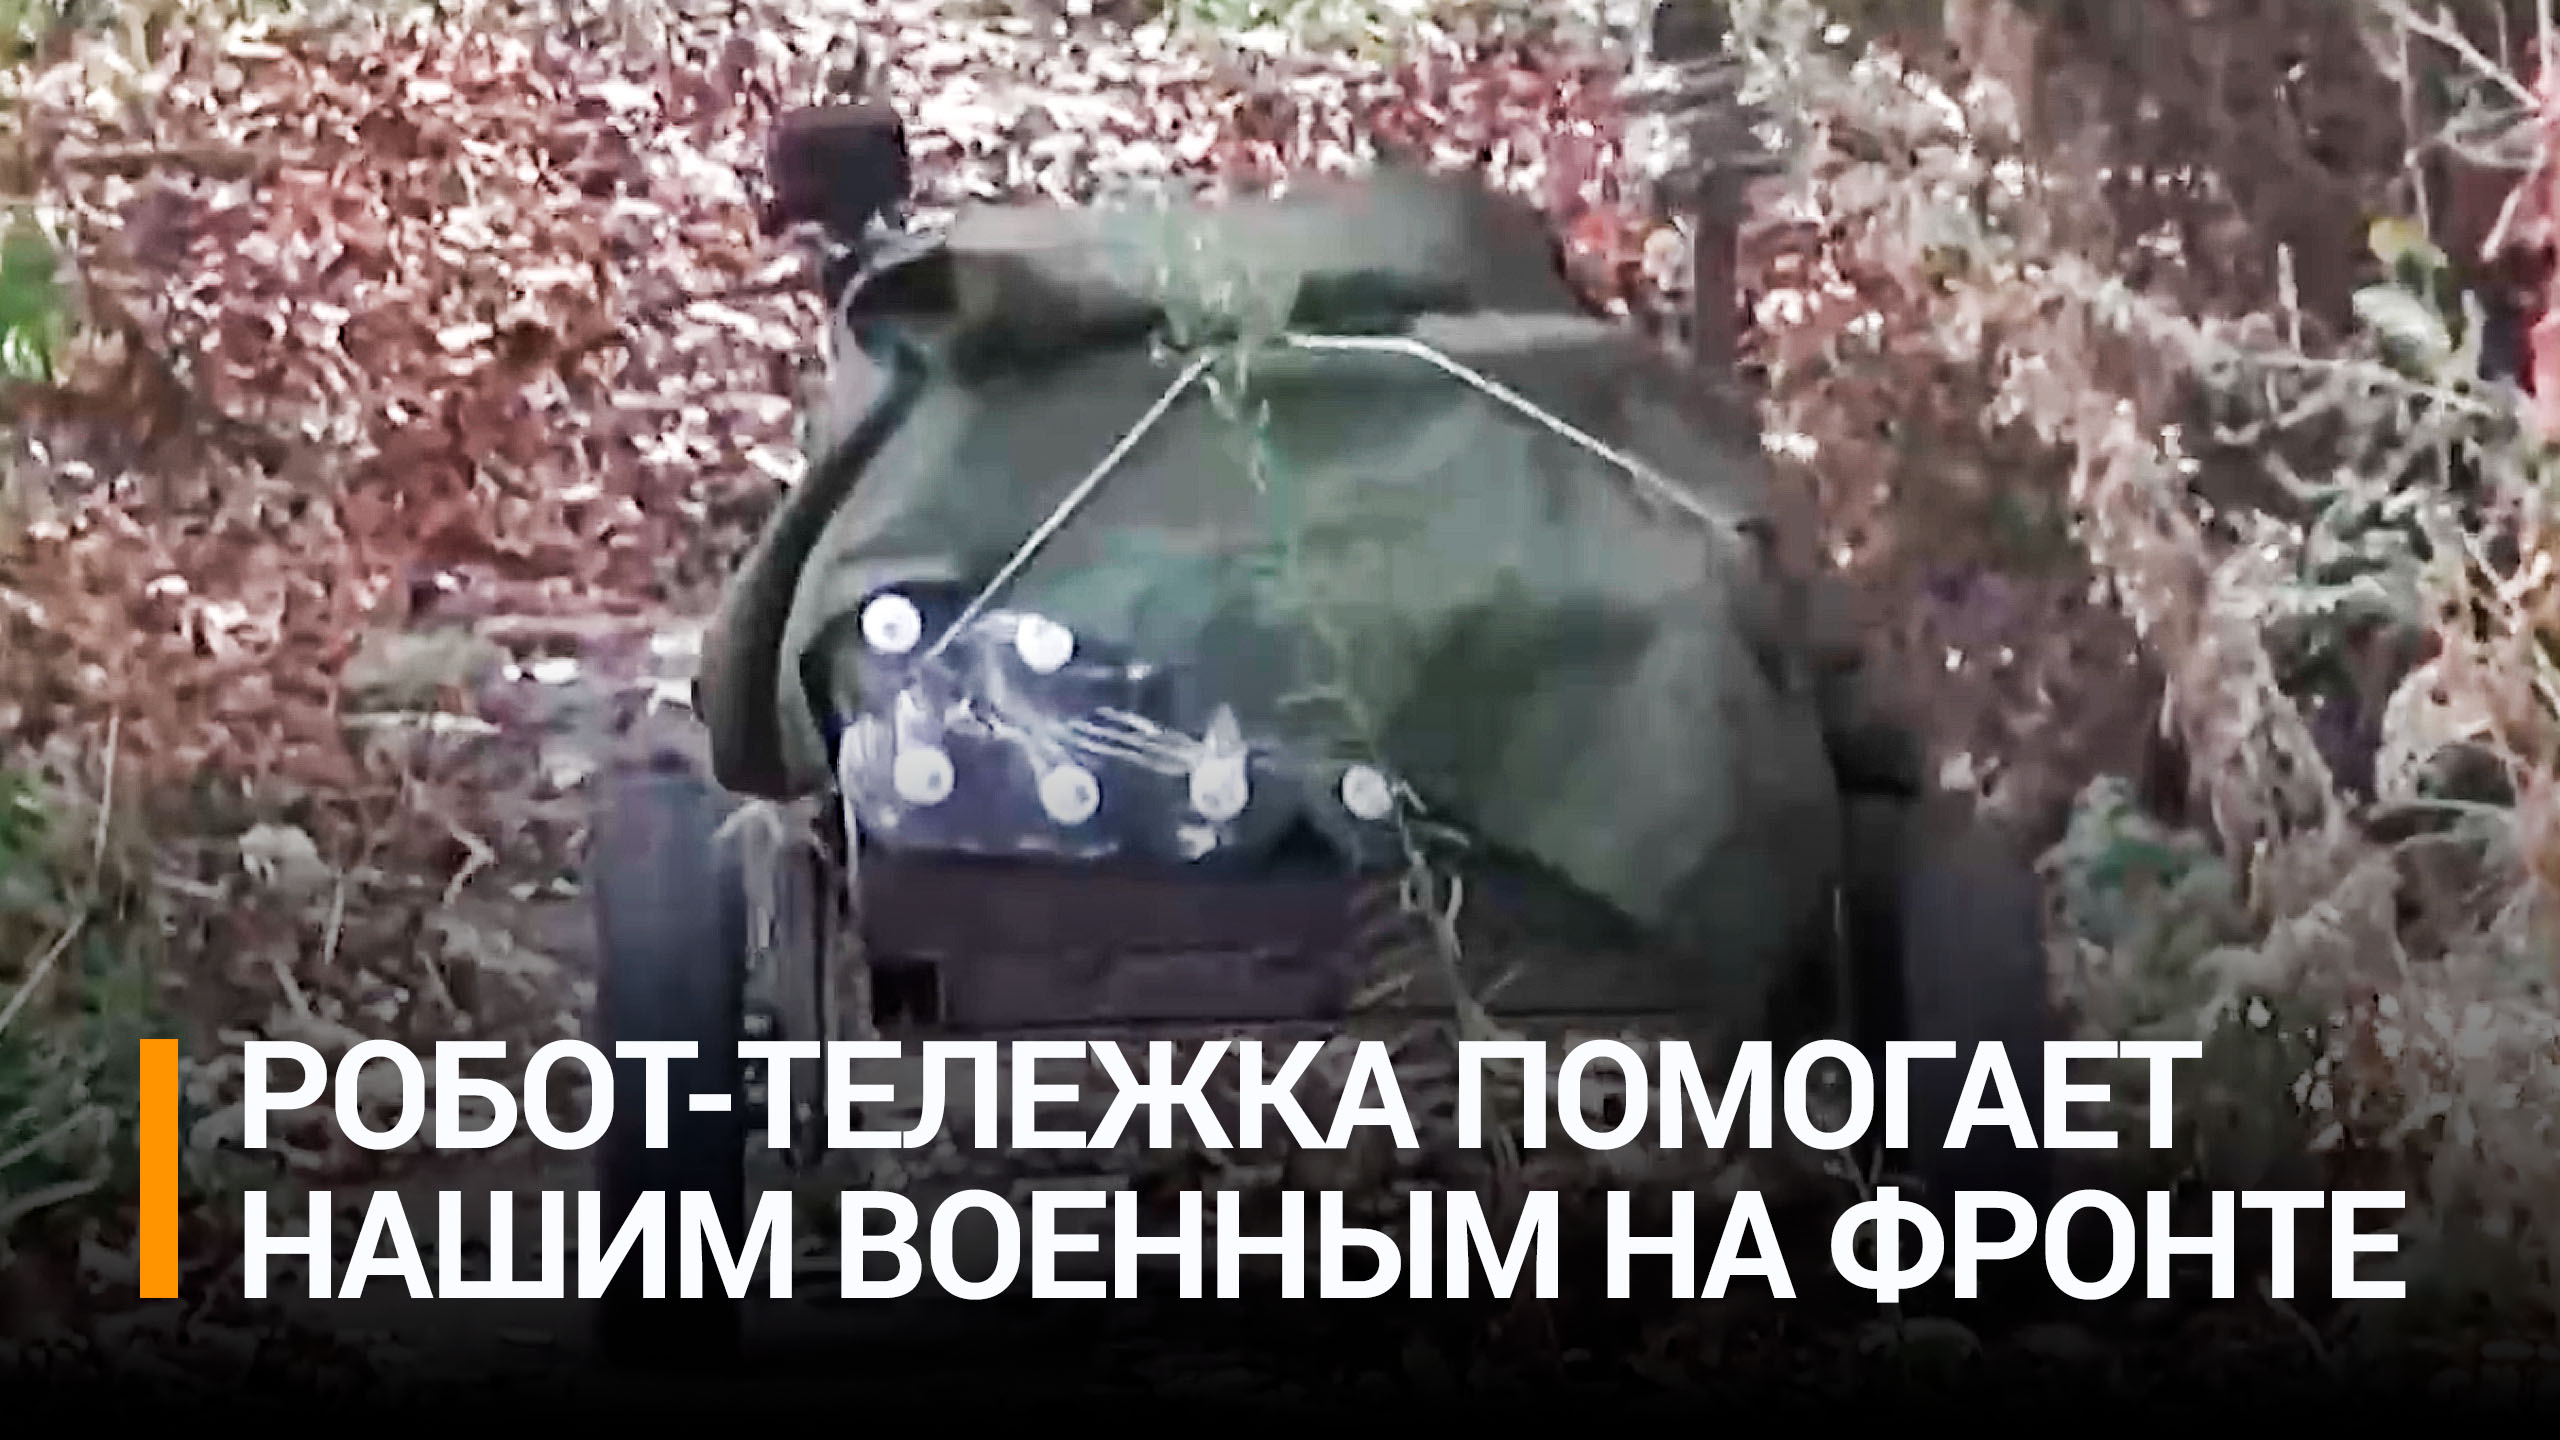 Роботы-доставщики появились в распоряжении артиллеристов ВС РФ / РЕН Новости